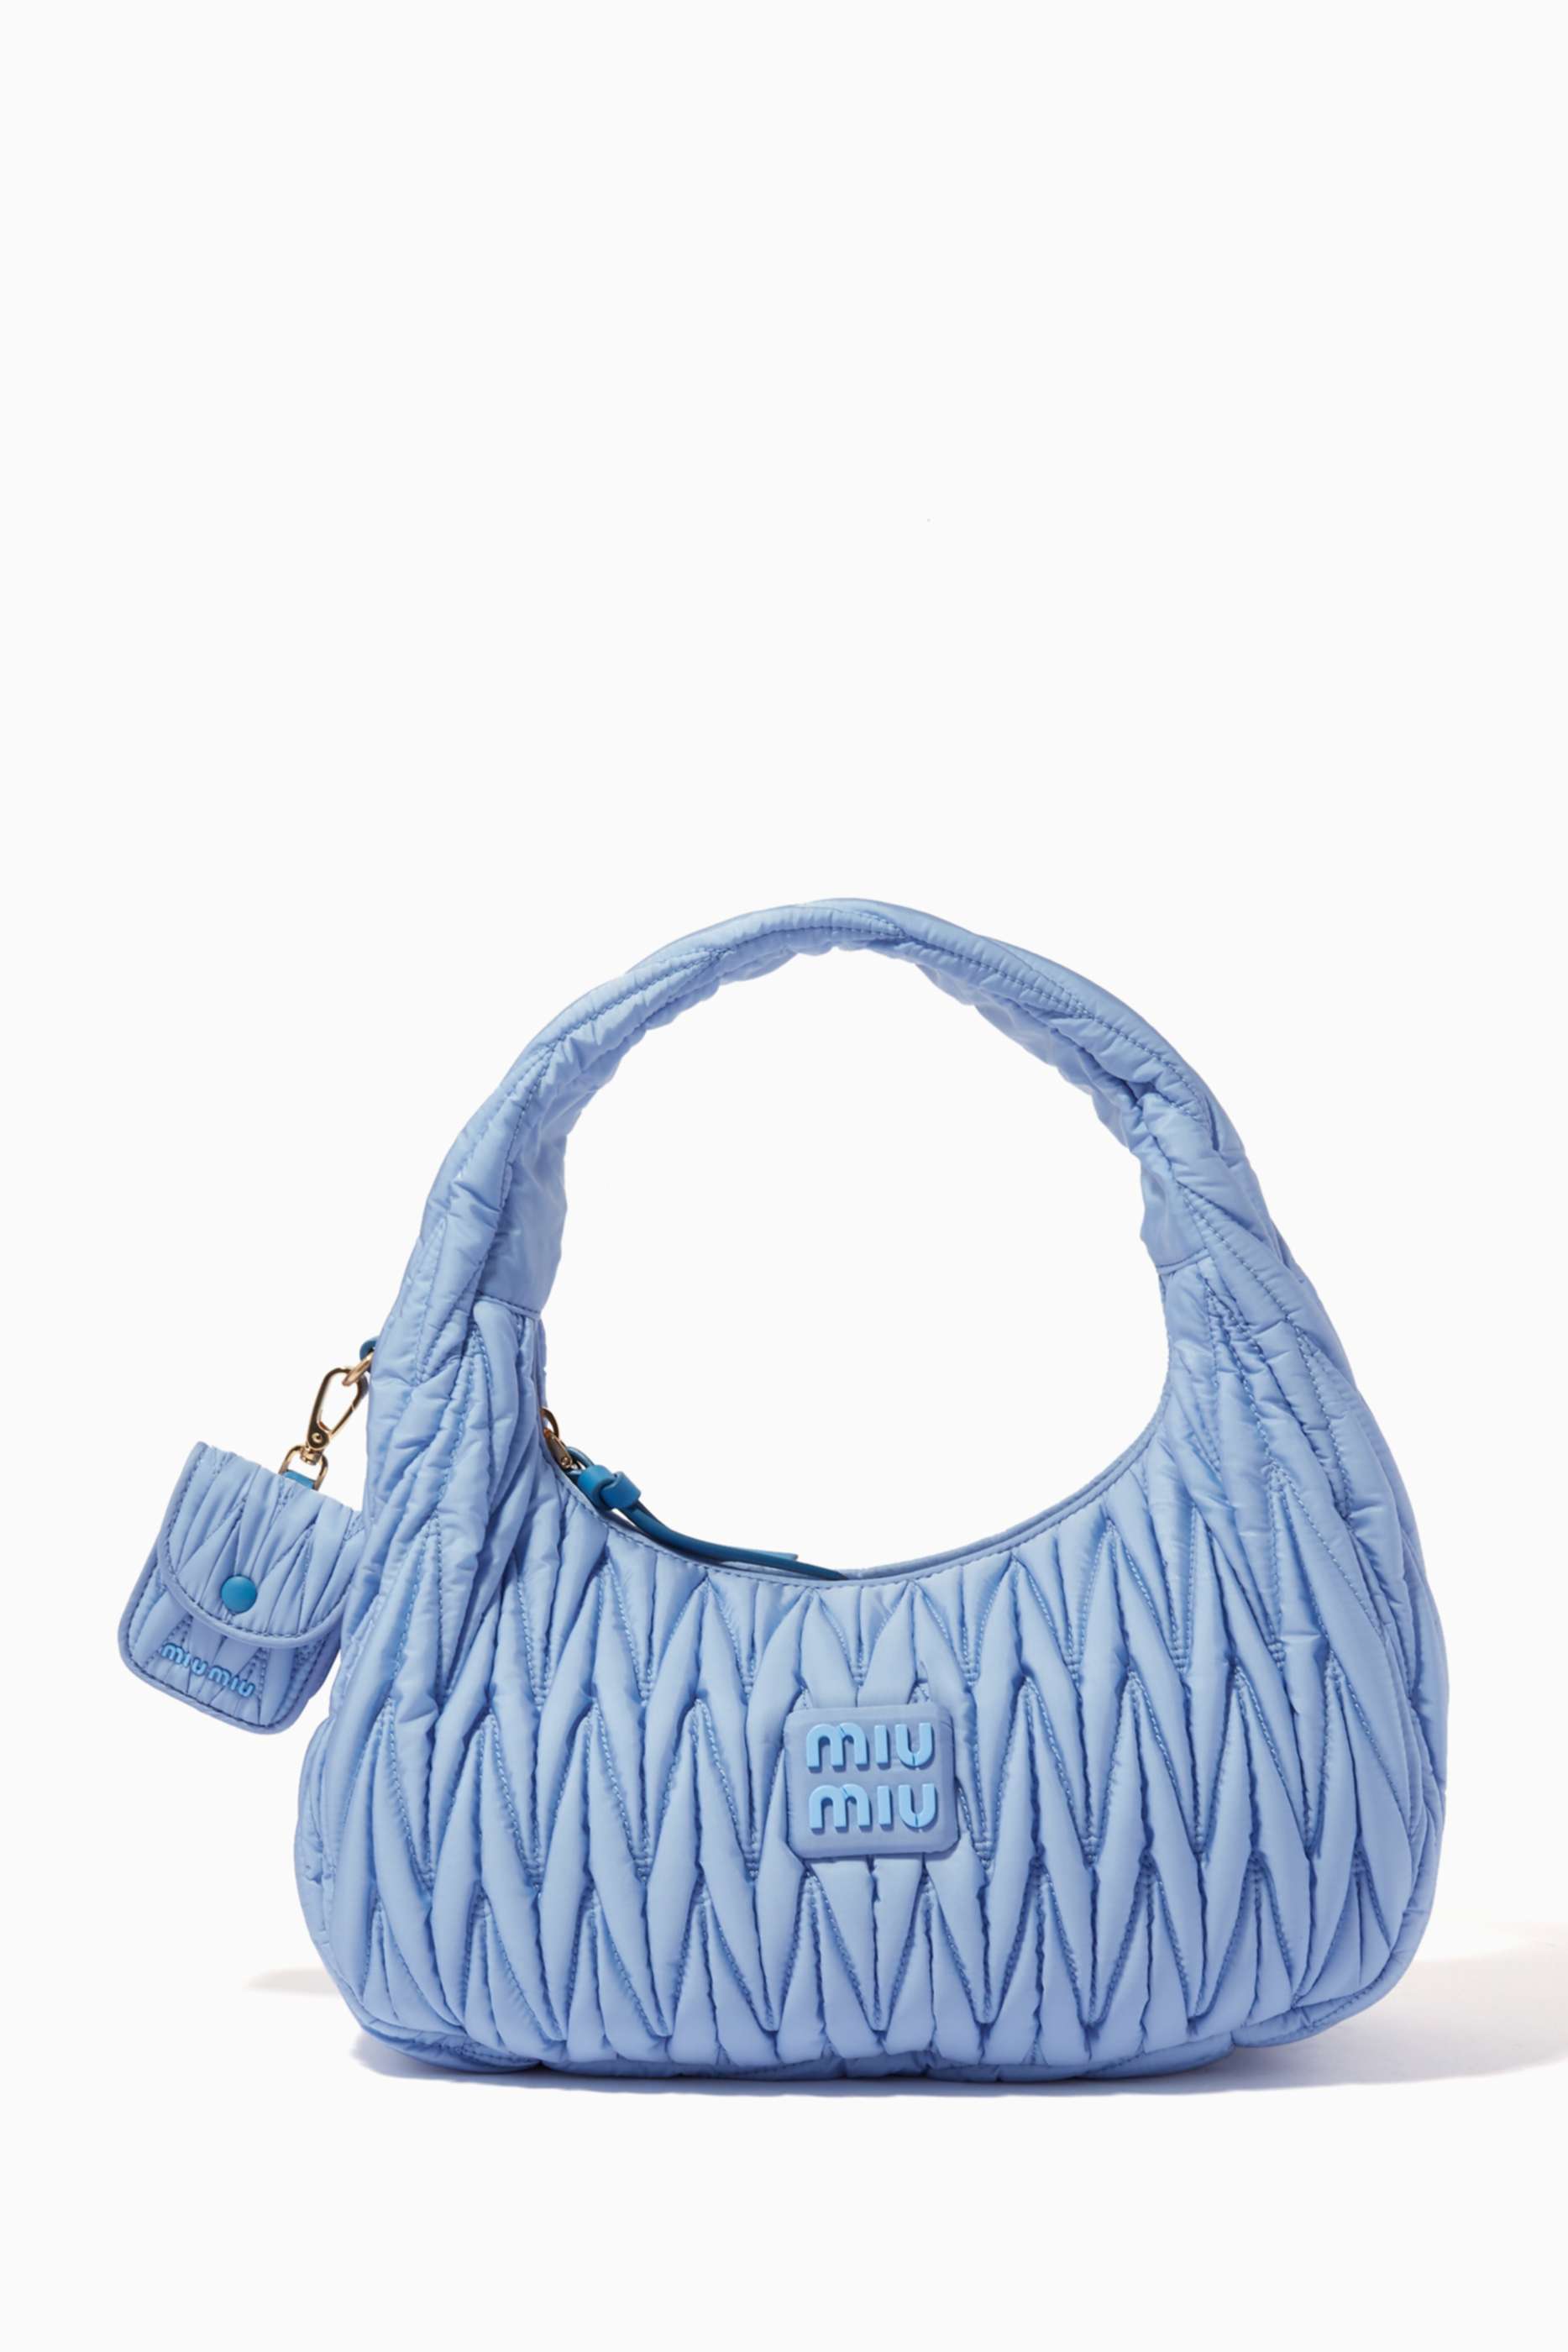 Shop Luxury Miu Miu Bags for Women Online | Ounass Oman